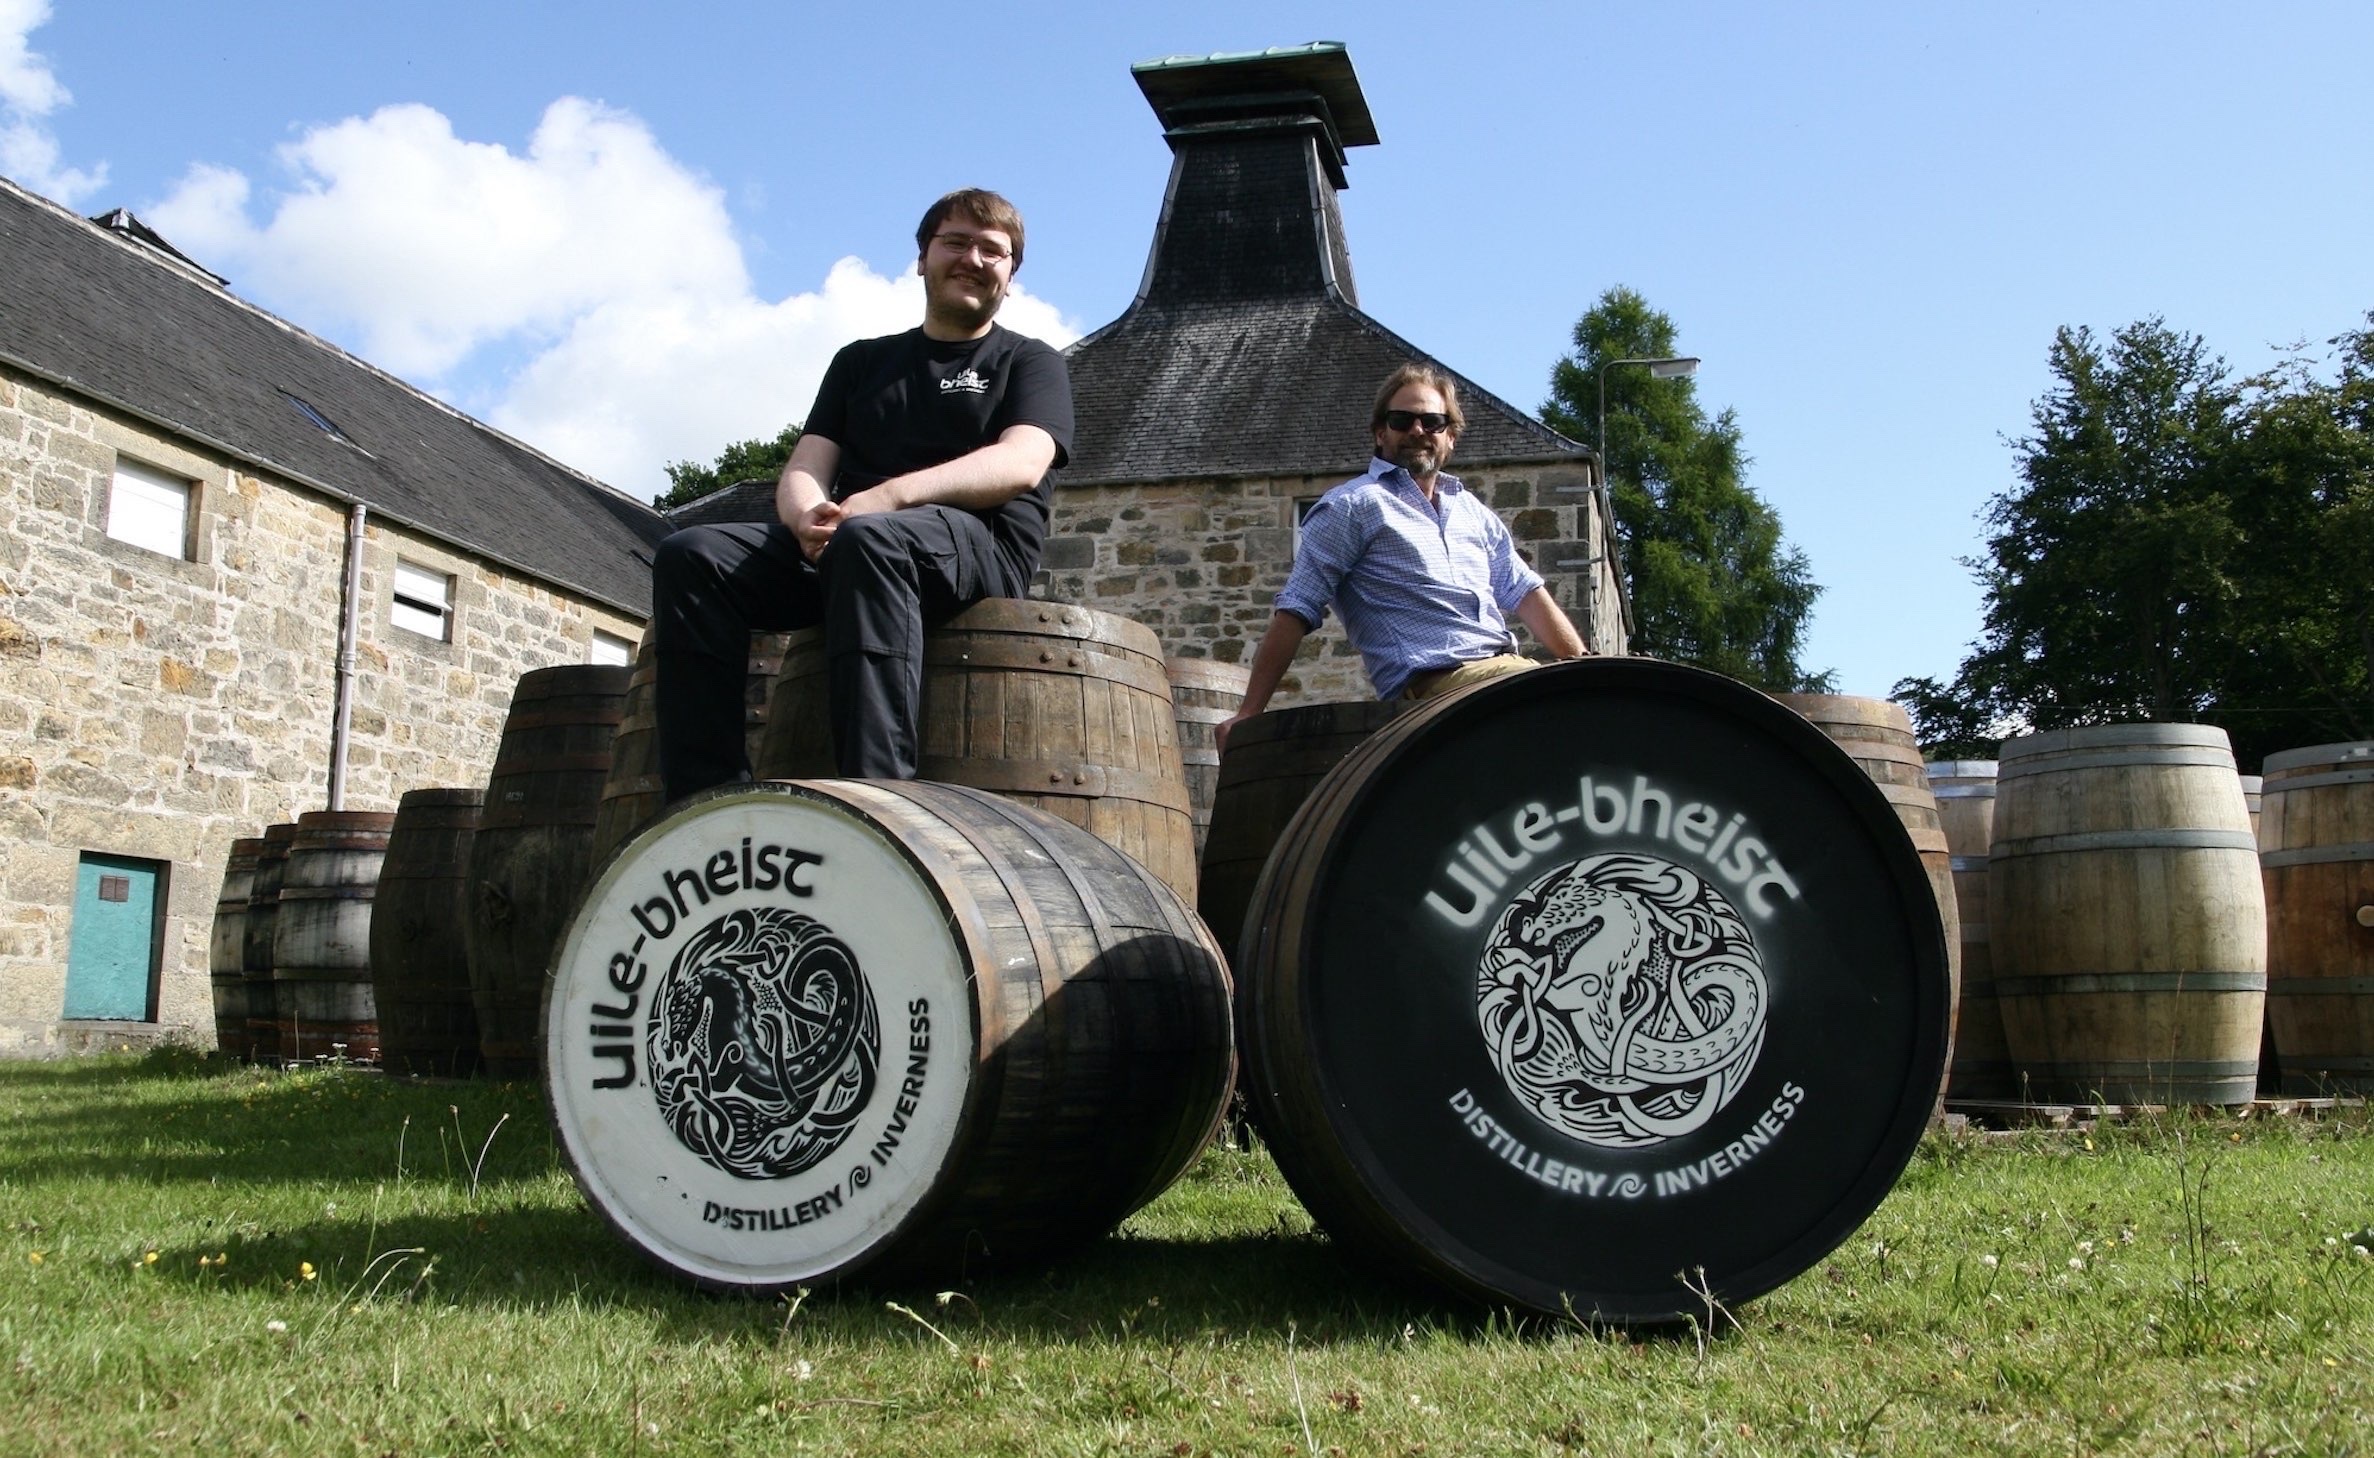 Inverness' Uile-bheist Distillery fills maiden casks